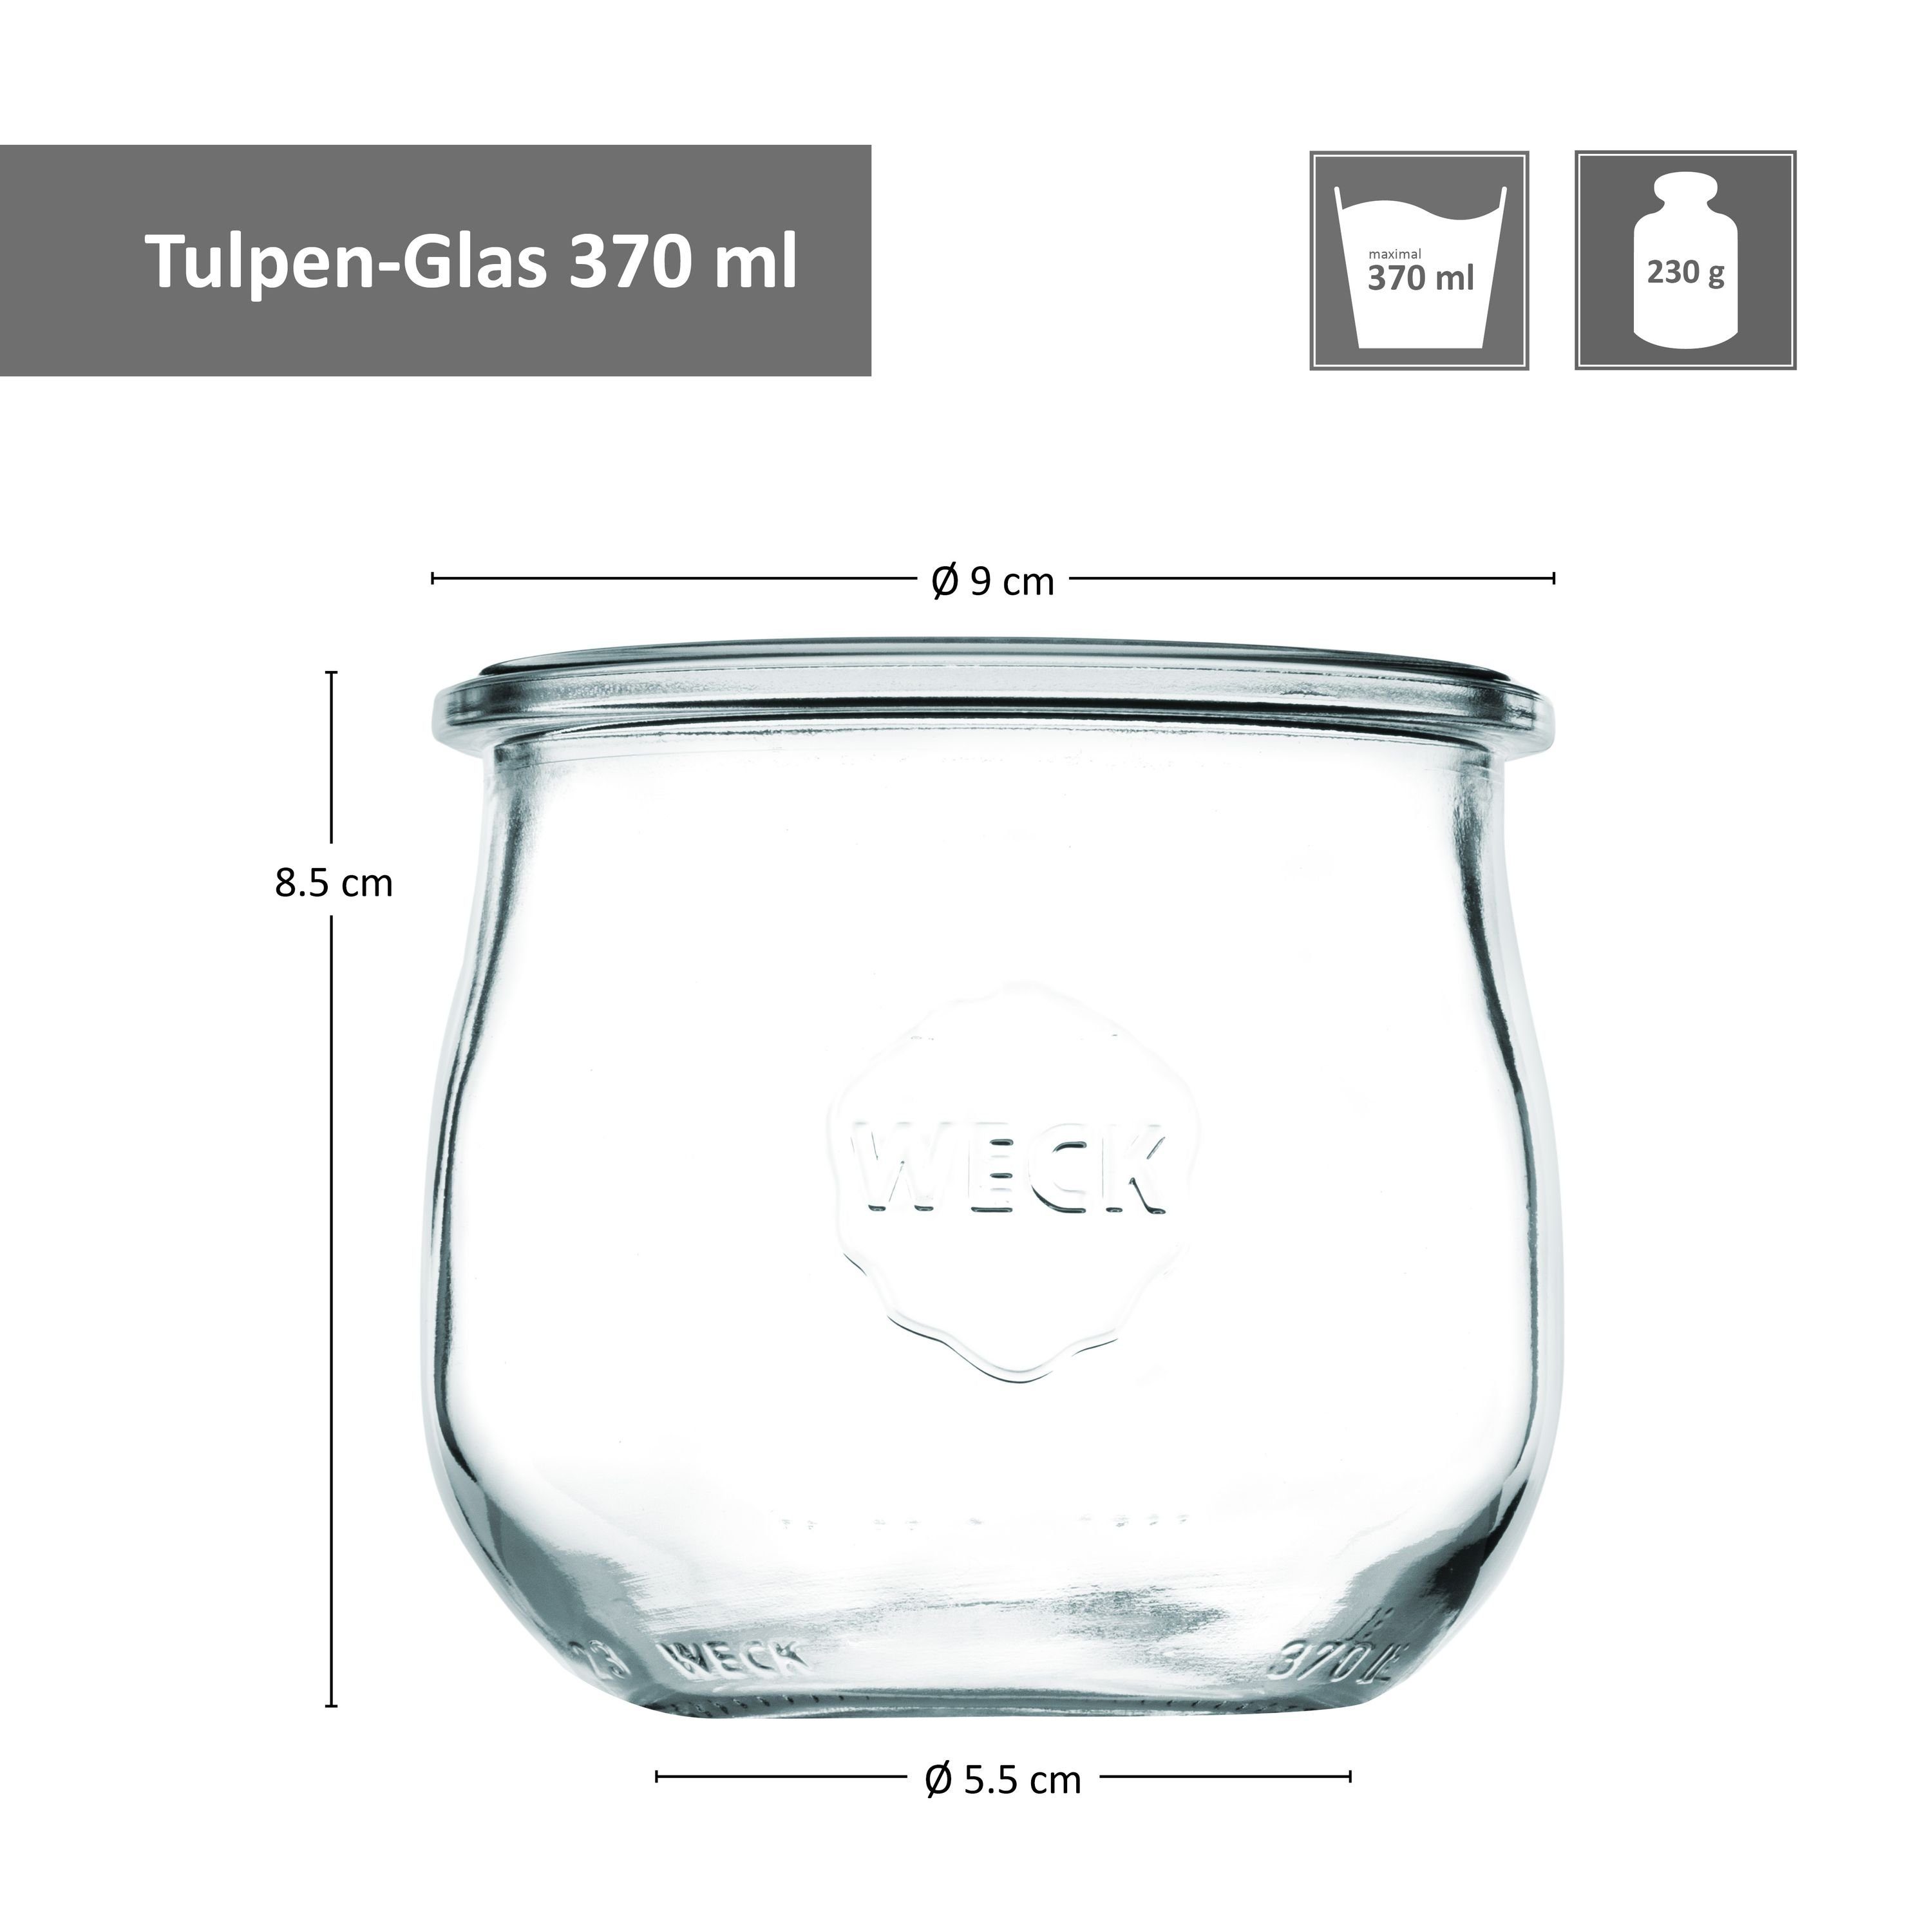 Glasdeckel Gläser 370ml Tulpenglas Einkochringe Einmachglas Glas Set MamboCat 18er Klammer, Weck